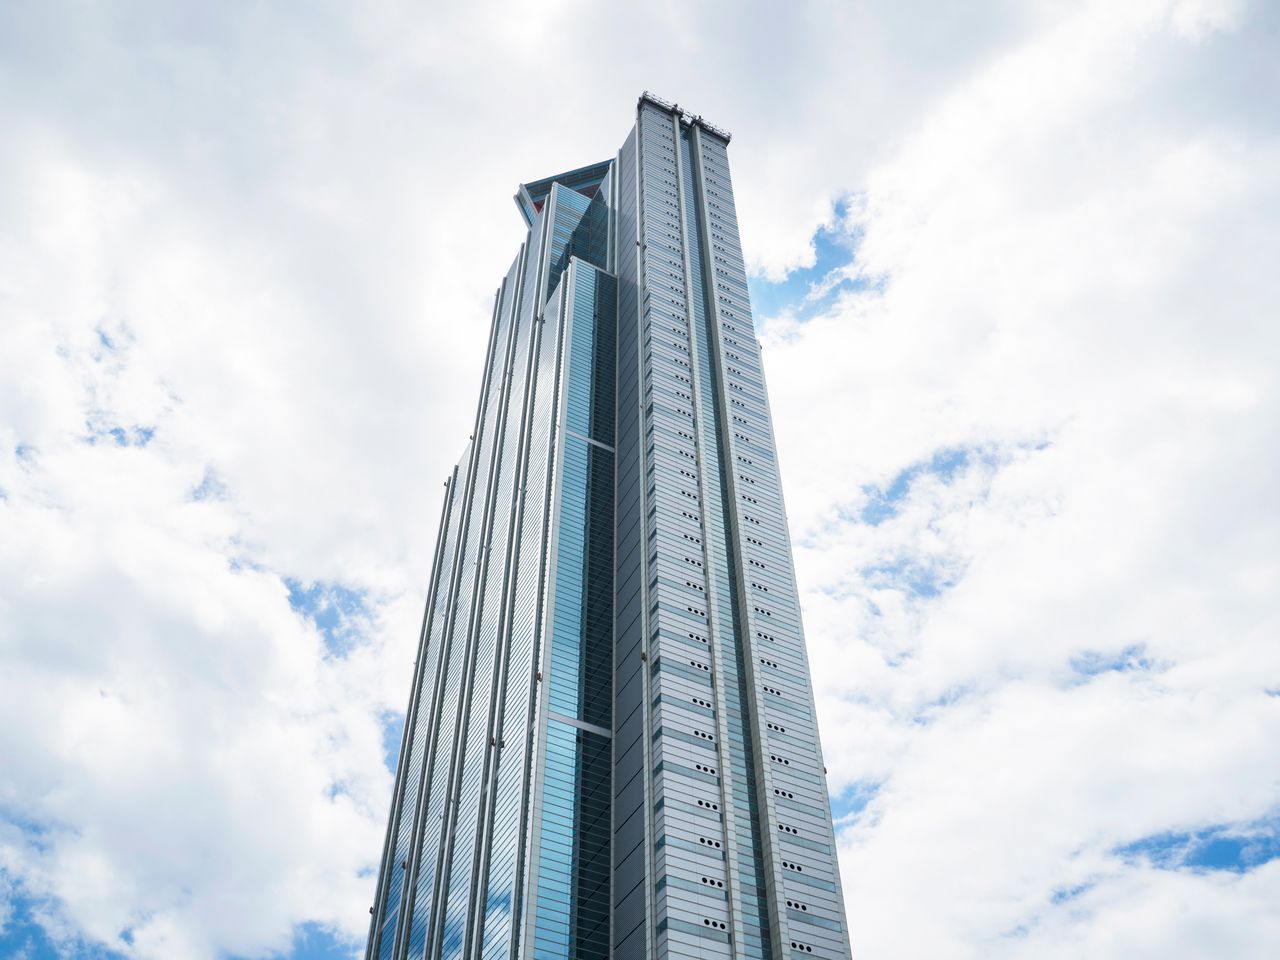 ニシのランドマークタワーとなる、大阪府咲洲庁舎「コスモタワー」